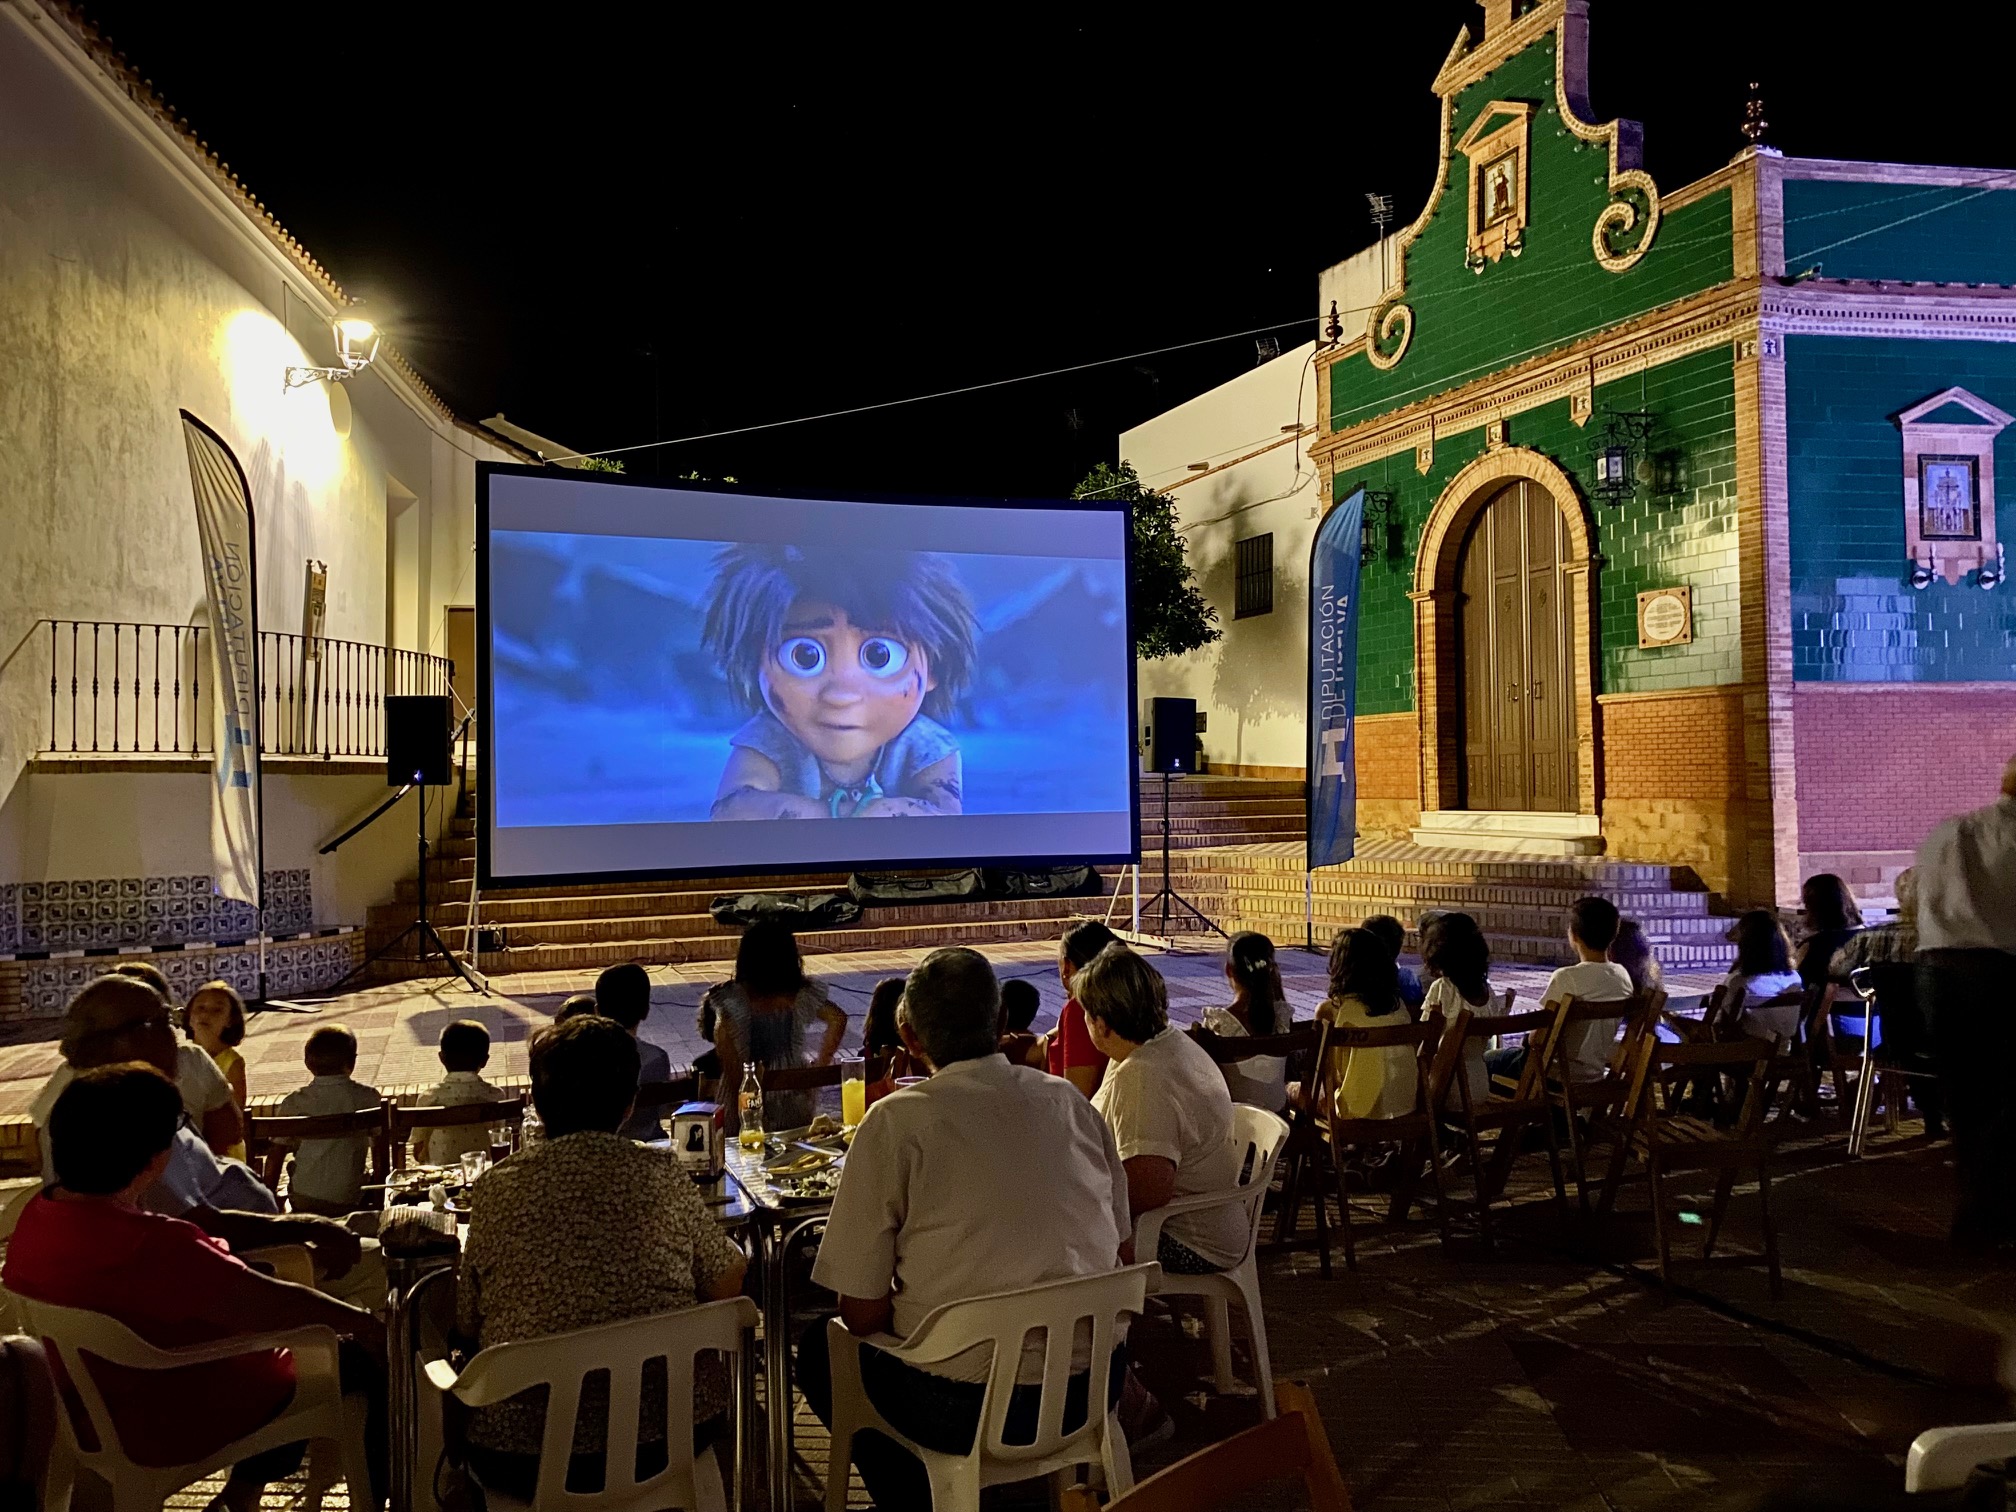 La campaña ‘Cine en el pueblo’ volverá a llevar películas este verano a municipios menores de 5.000 habitantes